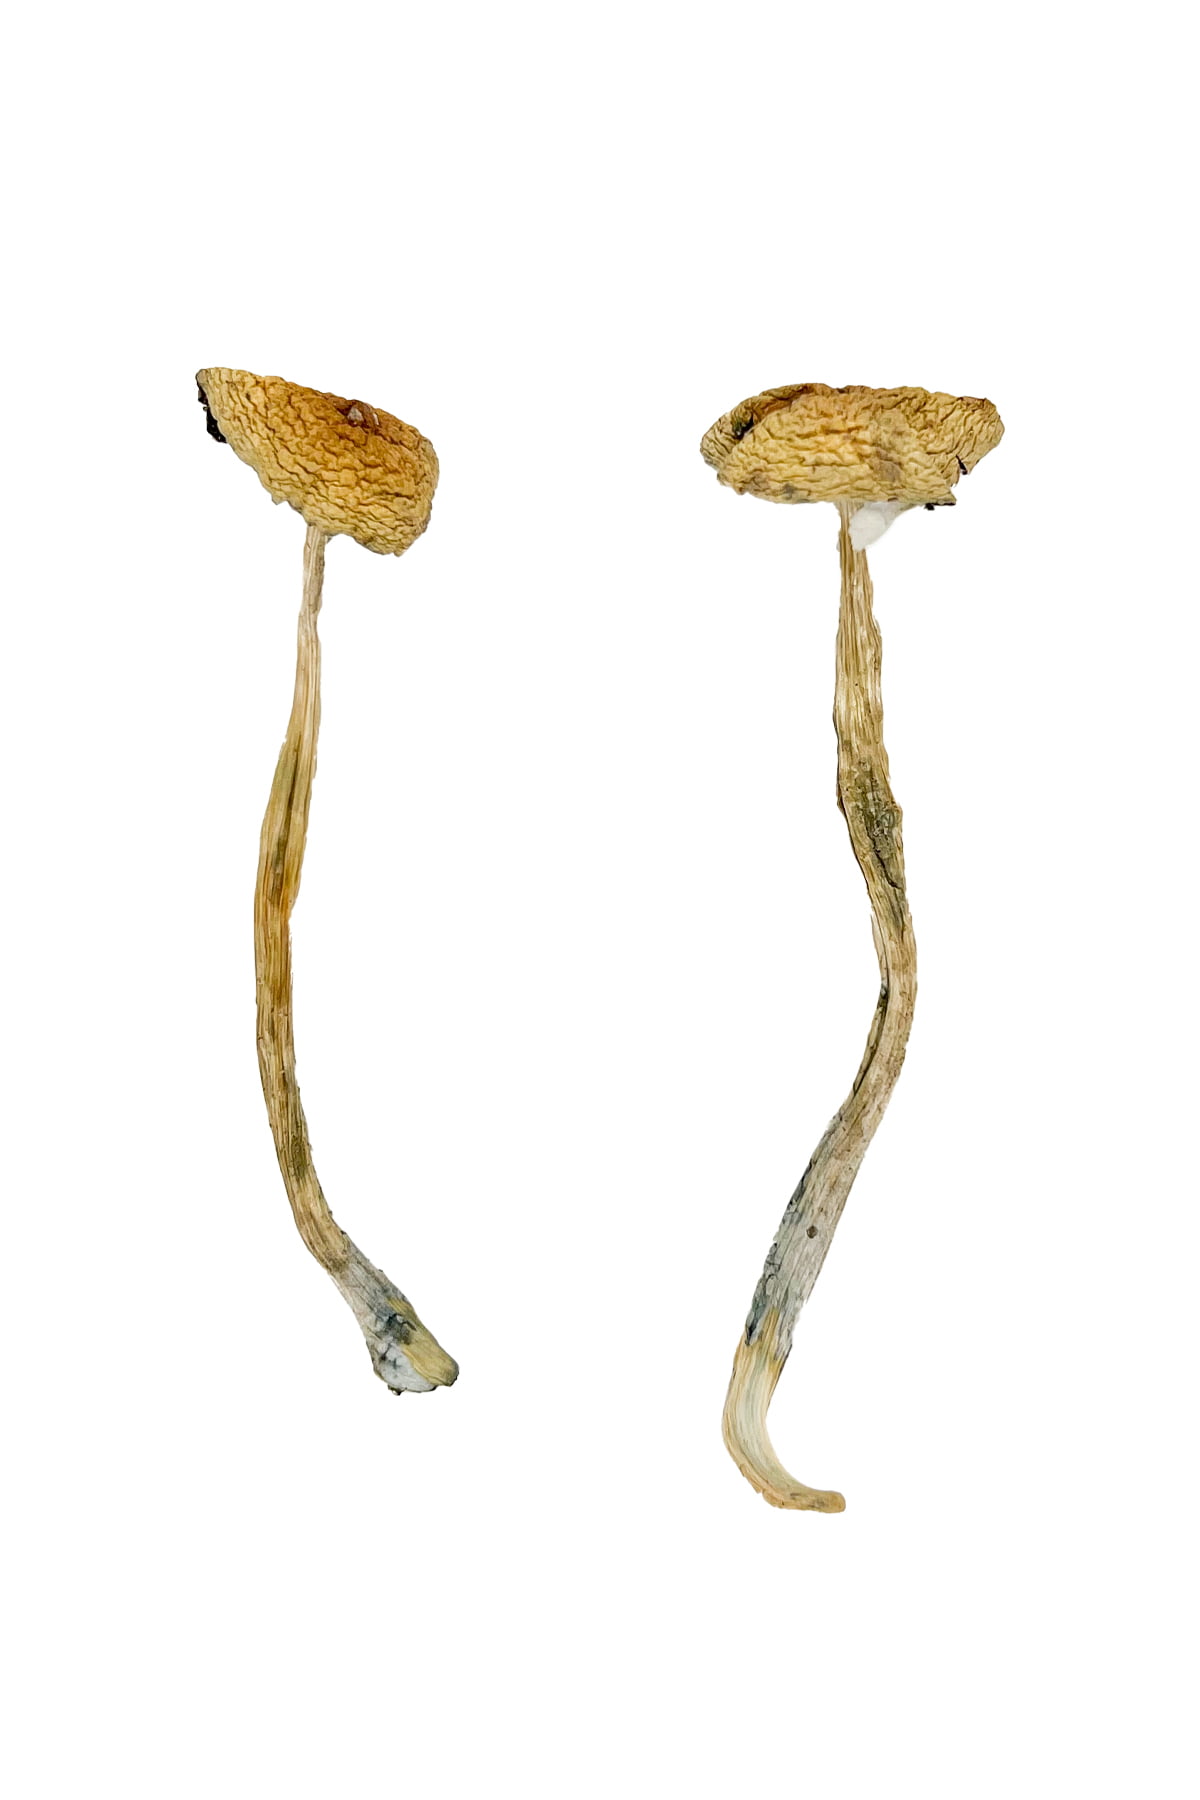 Nepal Chitwan Magic Mushrooms